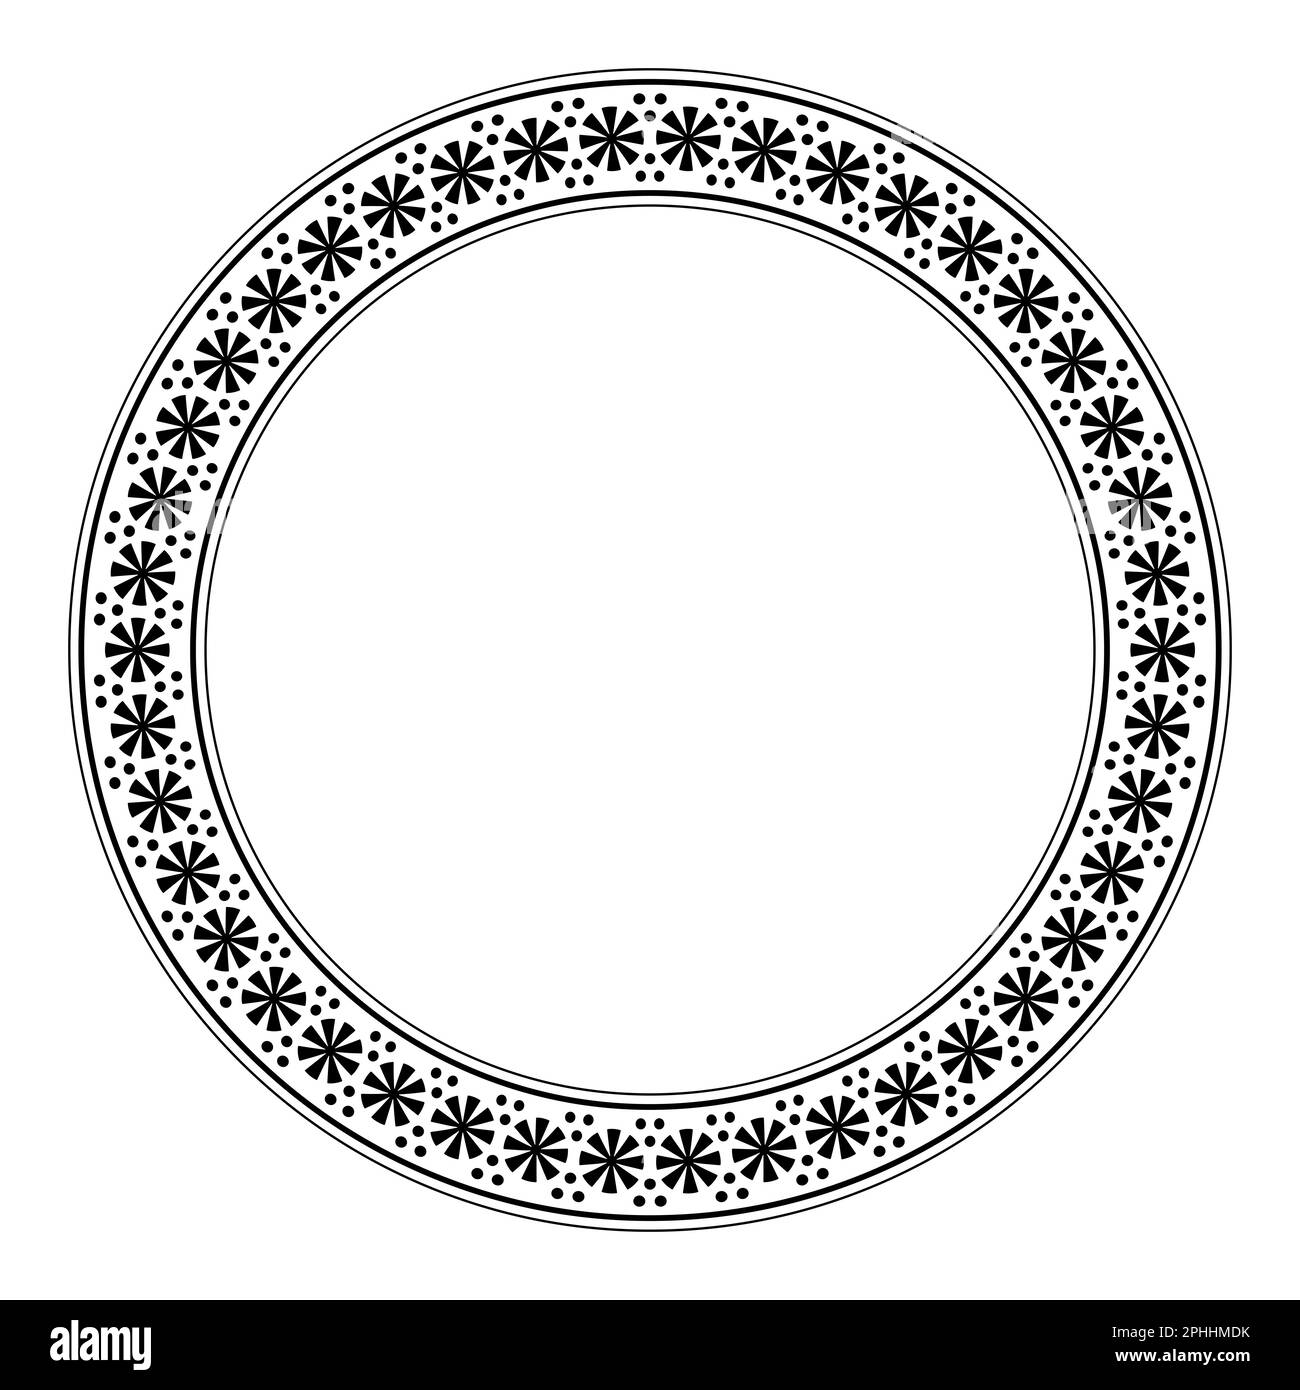 Cadre circulaire avec motif rosette et points. Bordure circulaire décorative avec motif fleuri stylisé rond, qui se trouve sur la poterie grecque ancienne. Banque D'Images